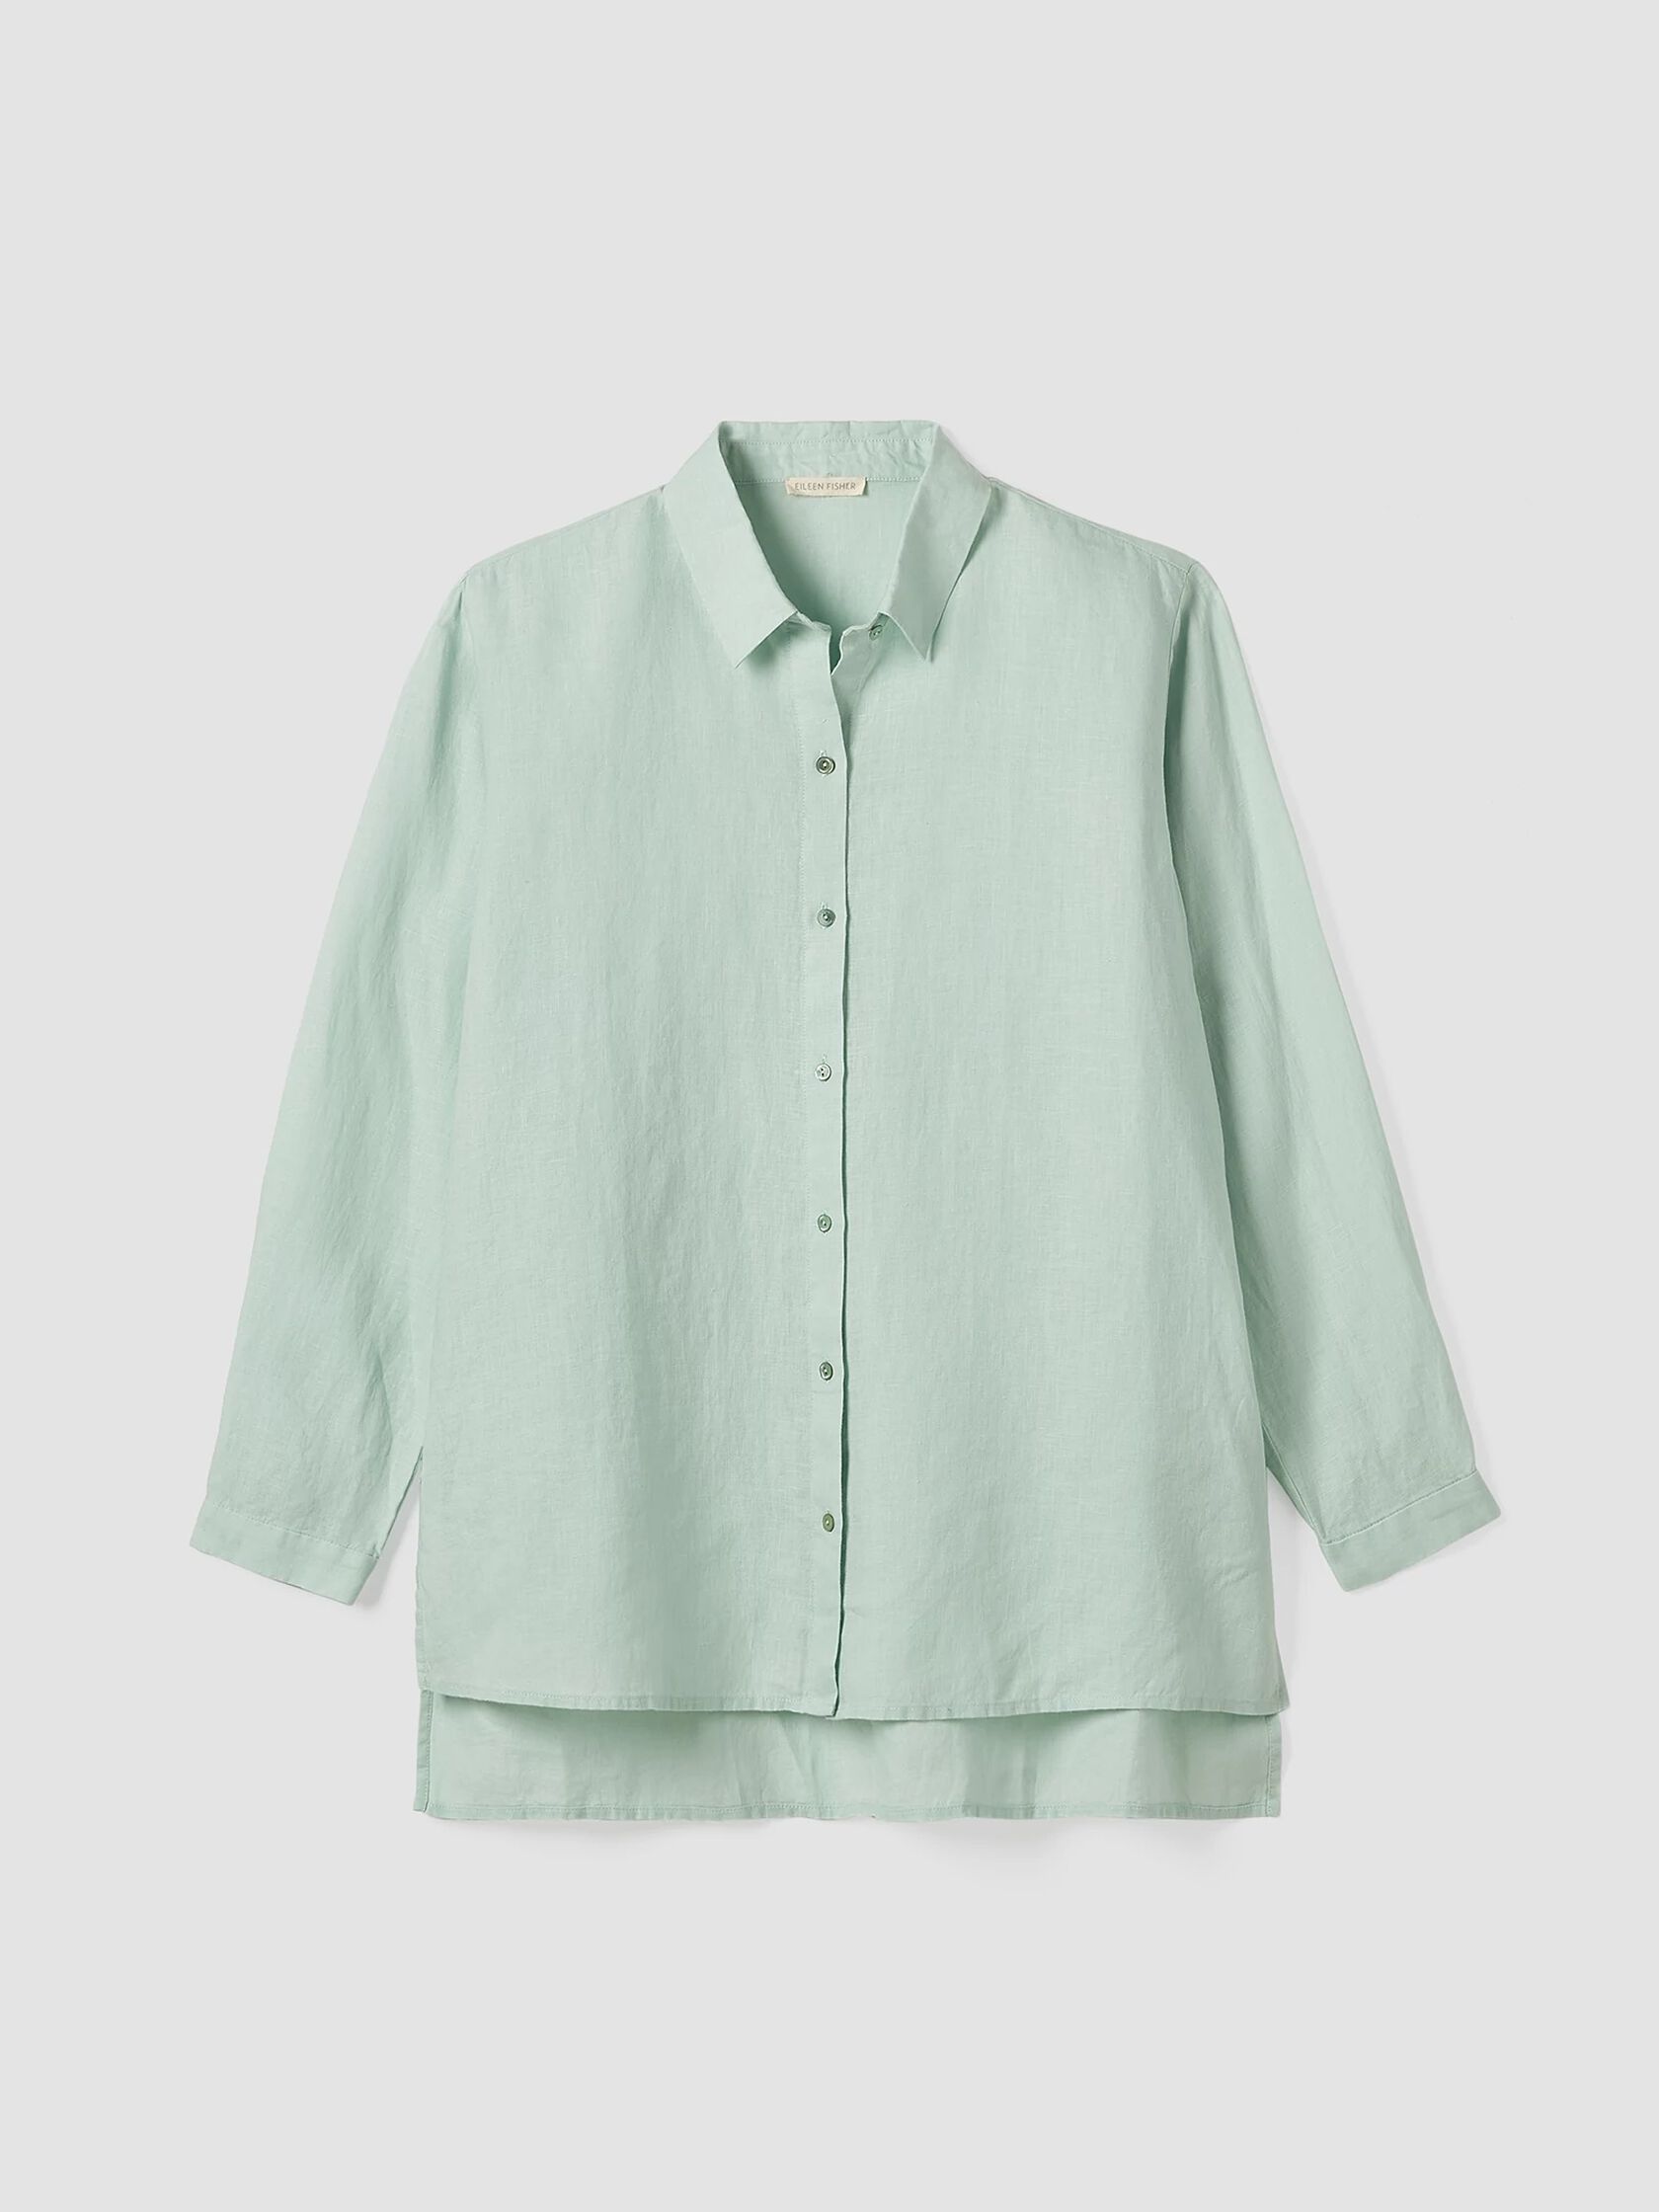 Handkerchief Linen Classic Collar Shirt | EILEEN FISHER